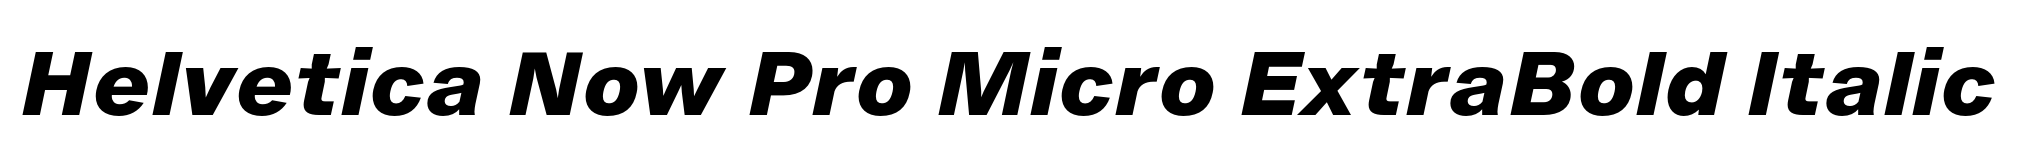 Helvetica Now Pro Micro ExtraBold Italic image